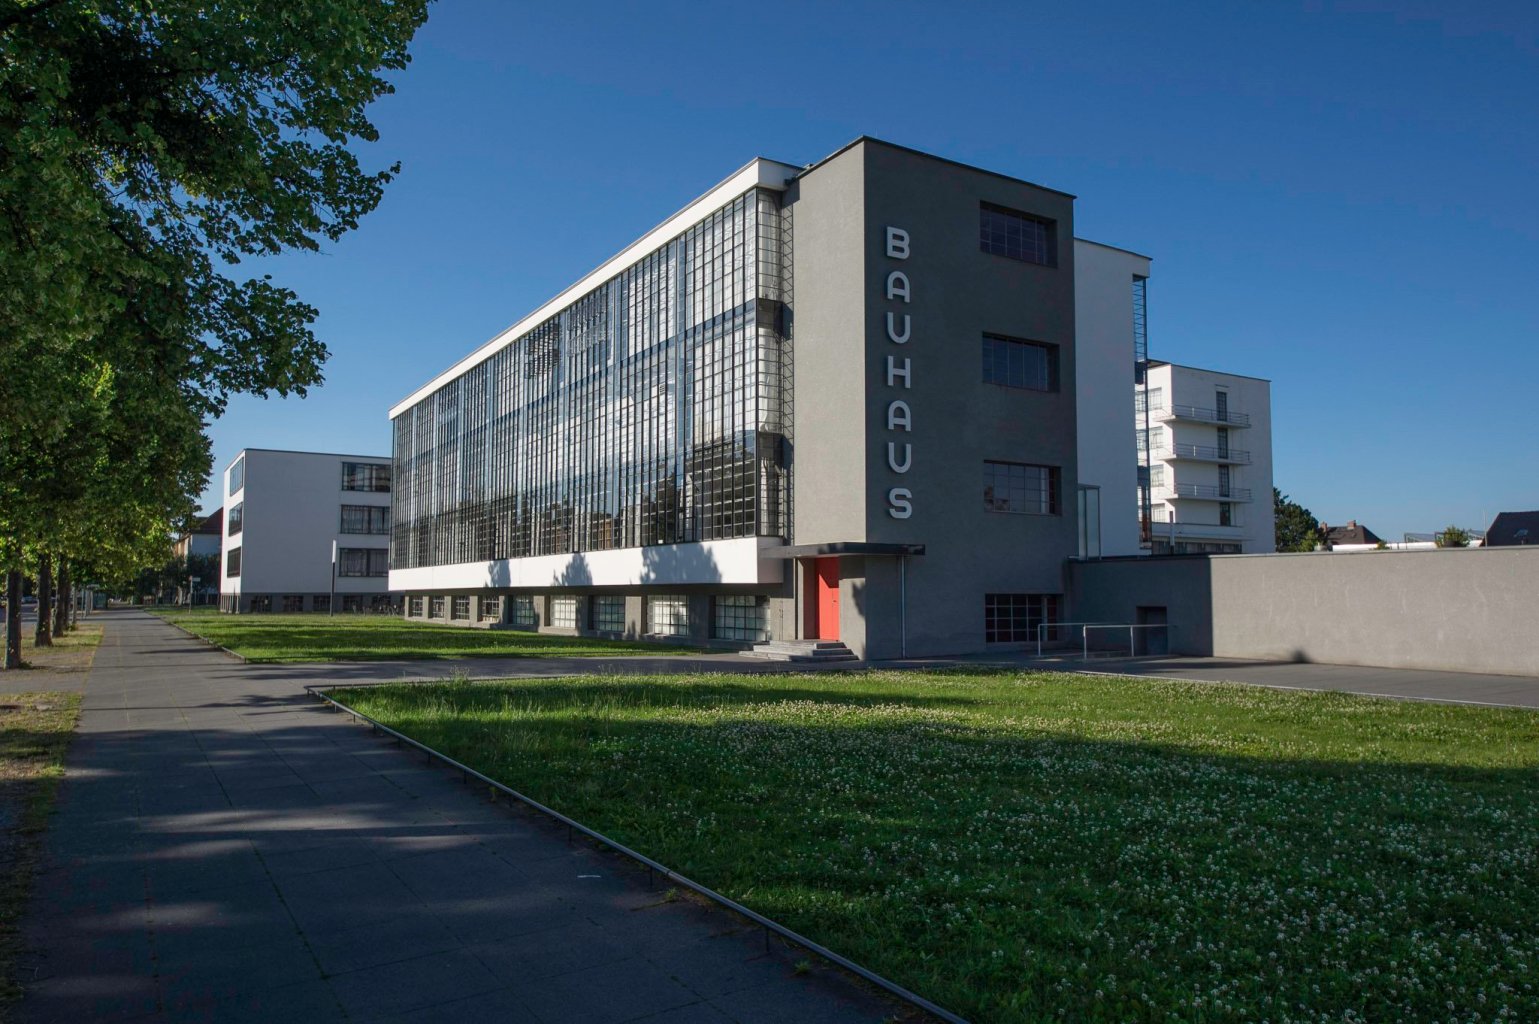 Schlusspunkt und eigentliches Ziel unserer Radtour: das Bauhaus Dessau in der Totalansicht